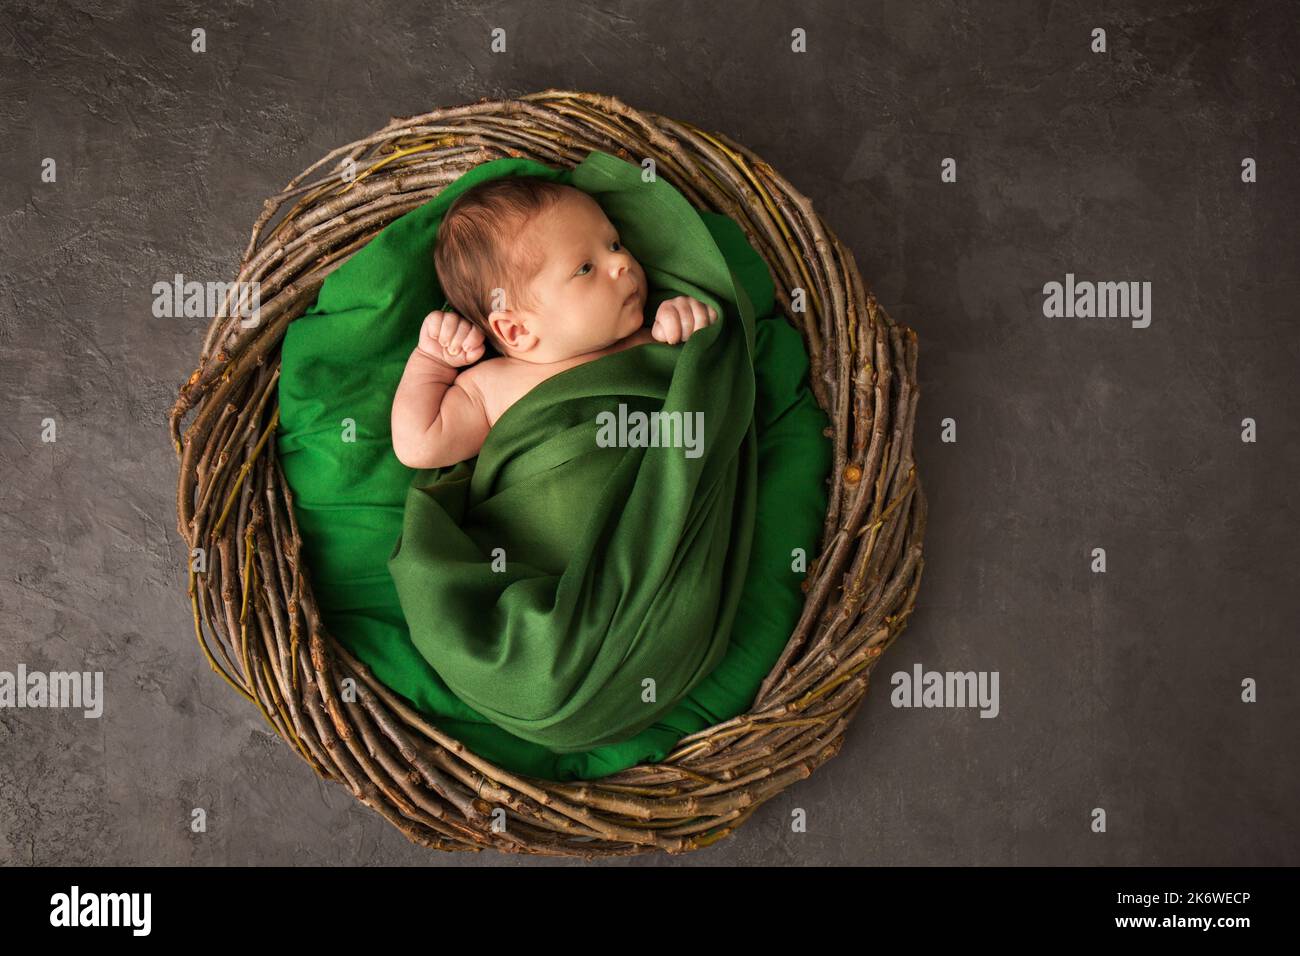 Niño Recién Nacido En Cesta, Bebé En Pañal, En Hojas De Col Foto de archivo  - Imagen de nuevo, alfombra: 200030656